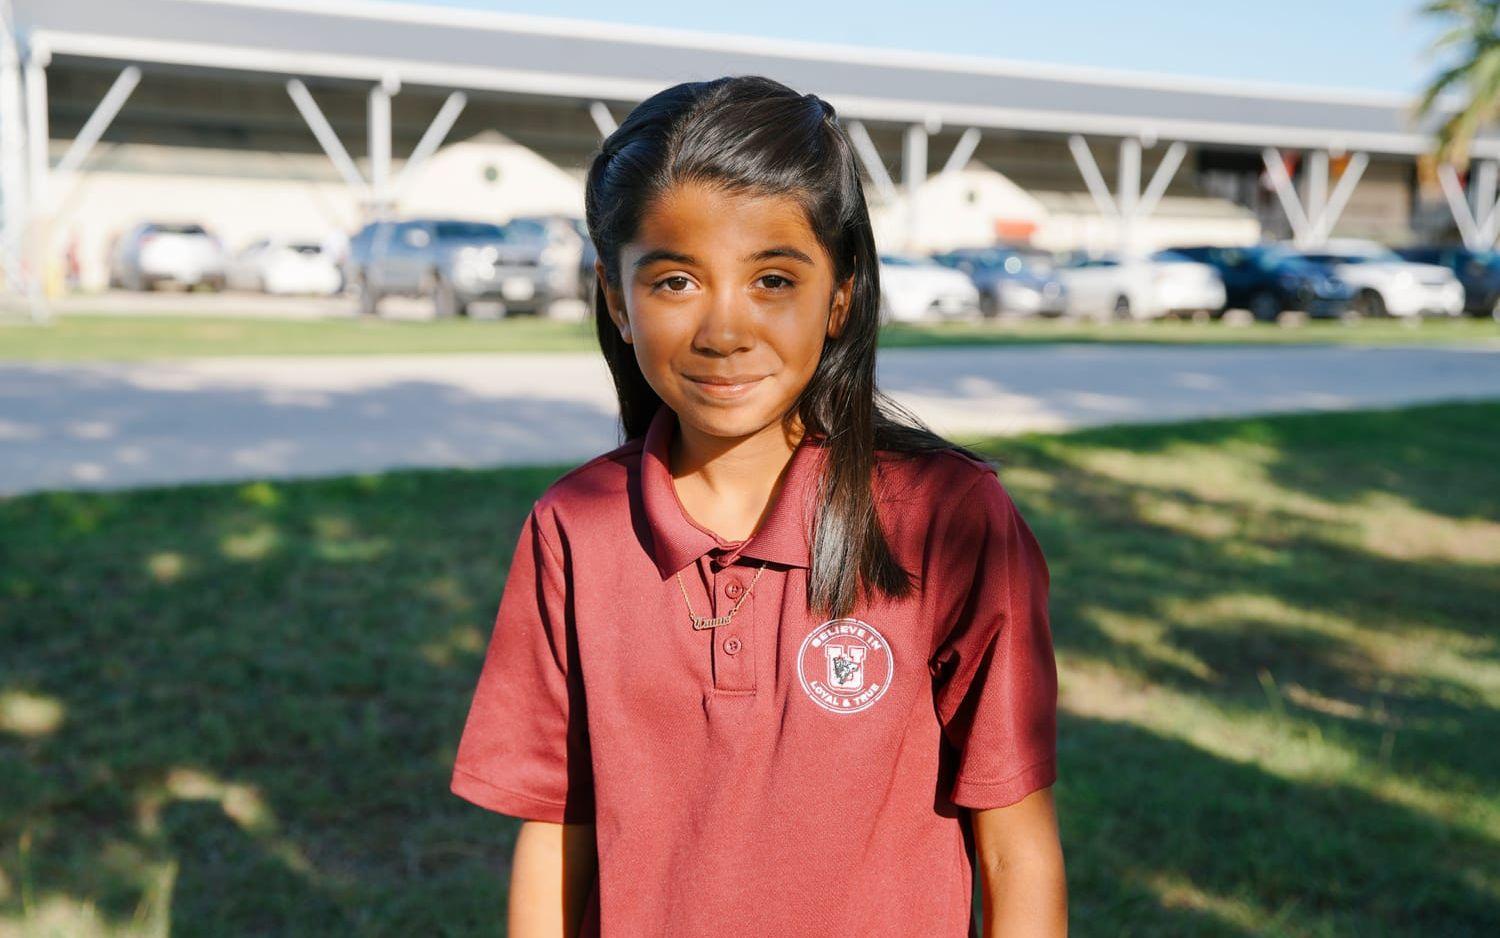 10-åriga Gabriella Cano går på samma skola som de barn som dödades i skolskjutningen. Hon befann sig själv på skolan när attacken utfördes.